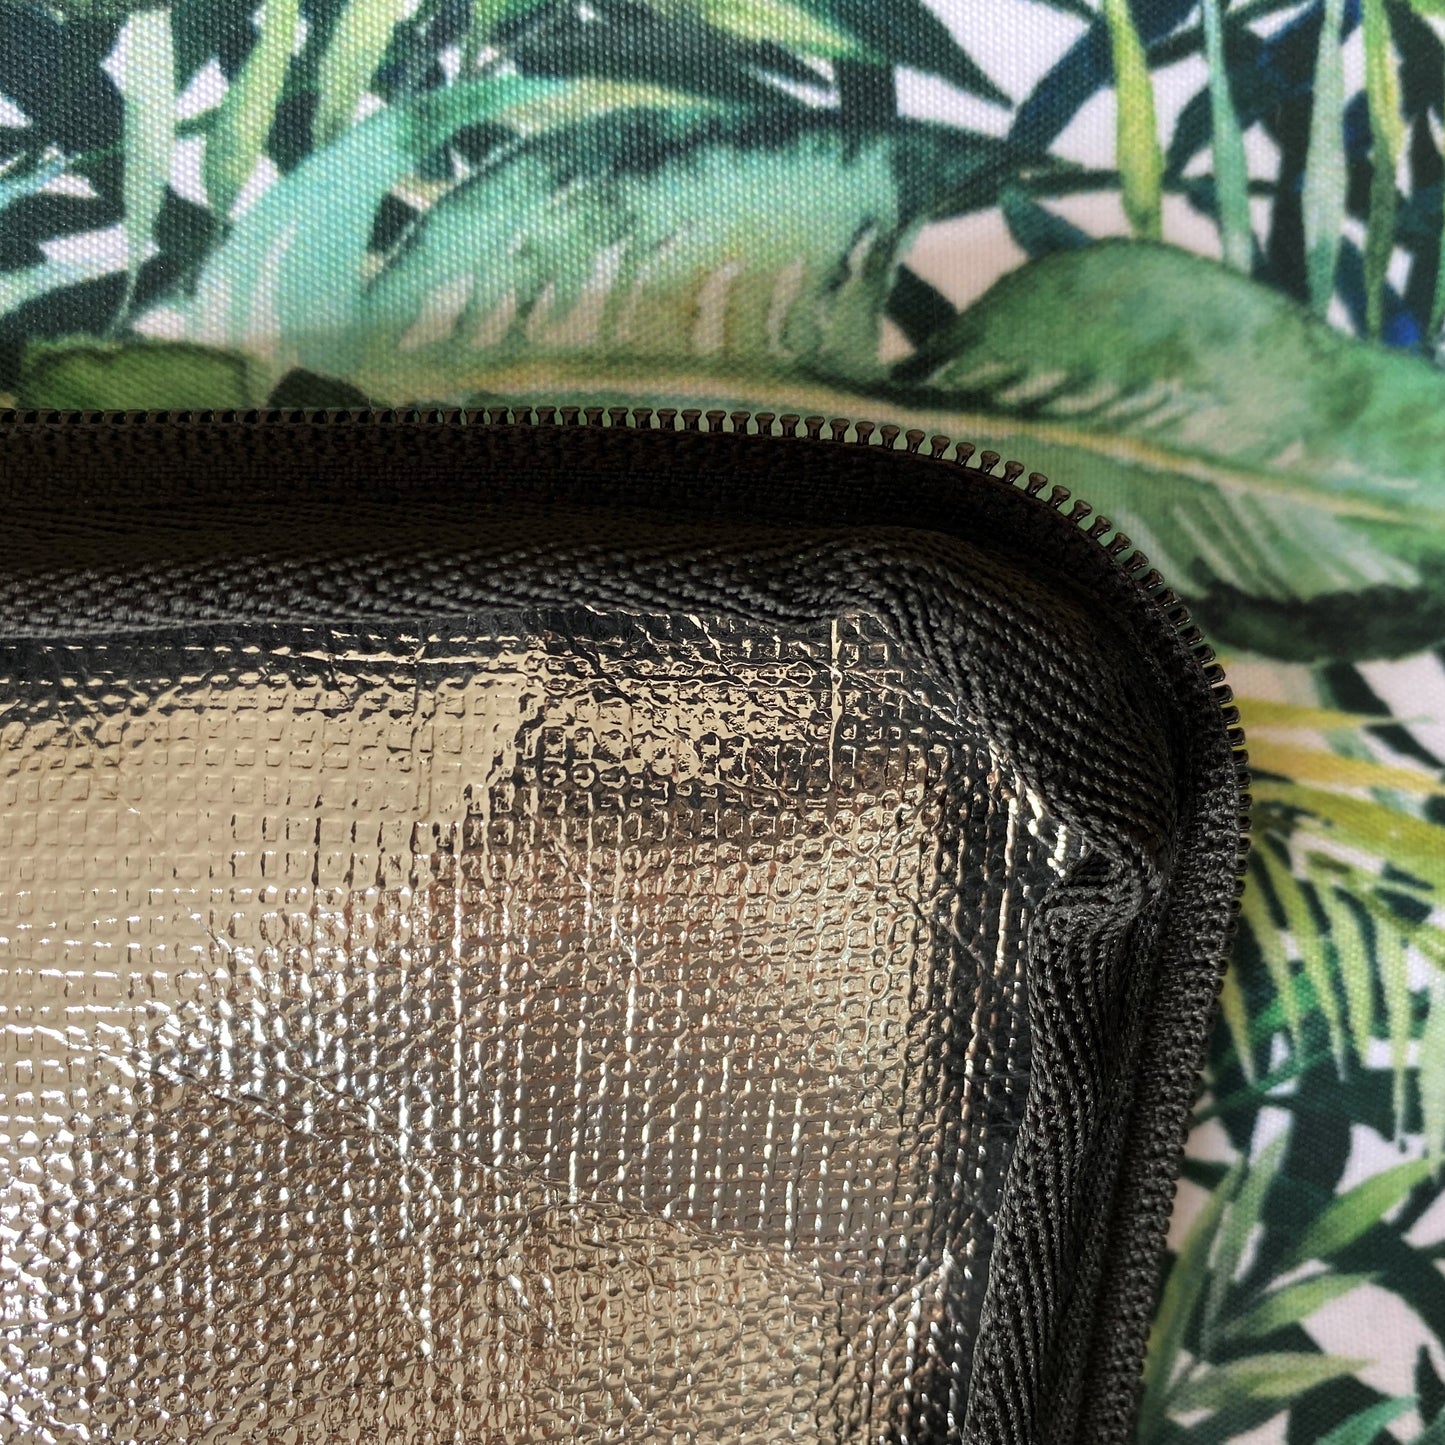 Shoreline Family Cooler Bag Tropical Leaf